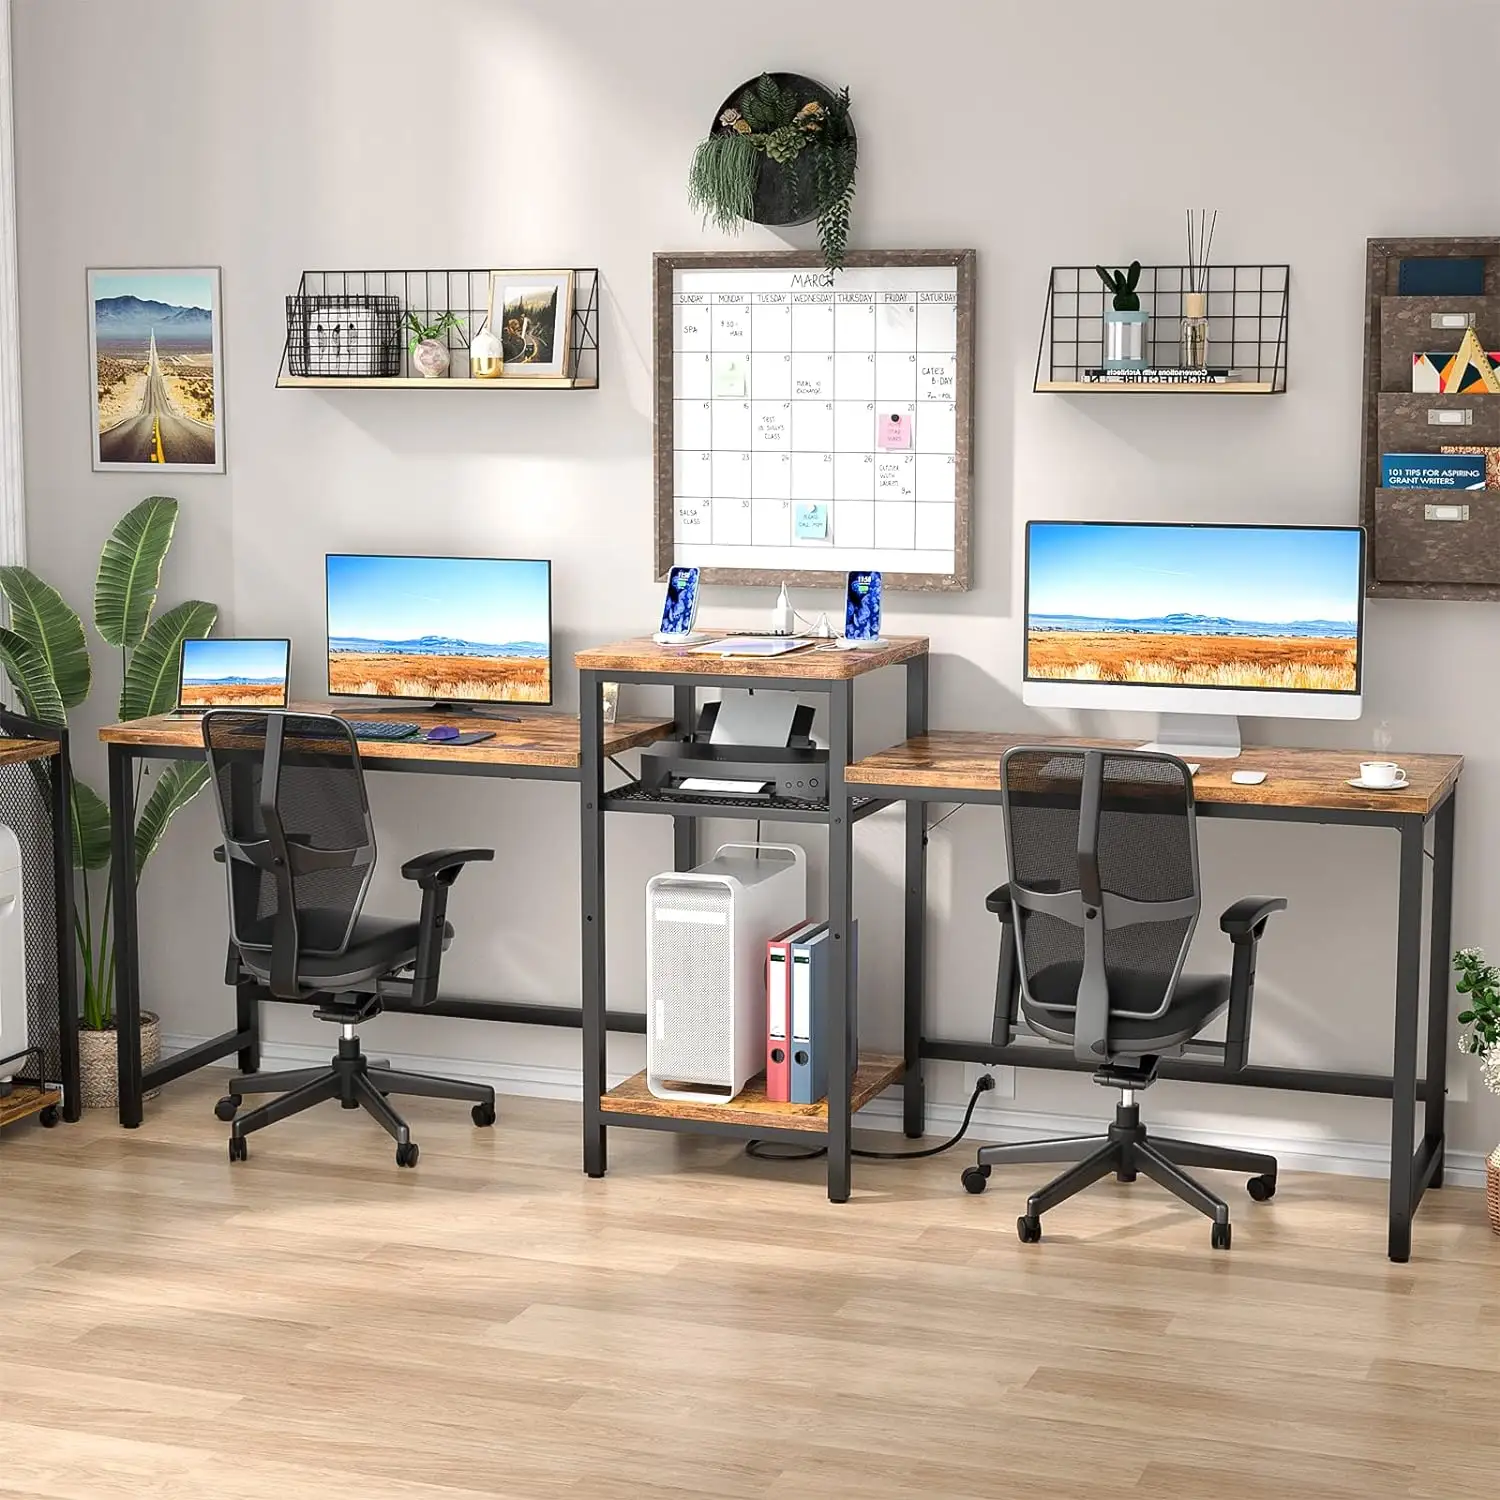 가정용 오픈 스토리지 선반 및 프린터 스탠드가있는 더블 롱 오피스 테이블 게임 2 인용 컴퓨터 책상